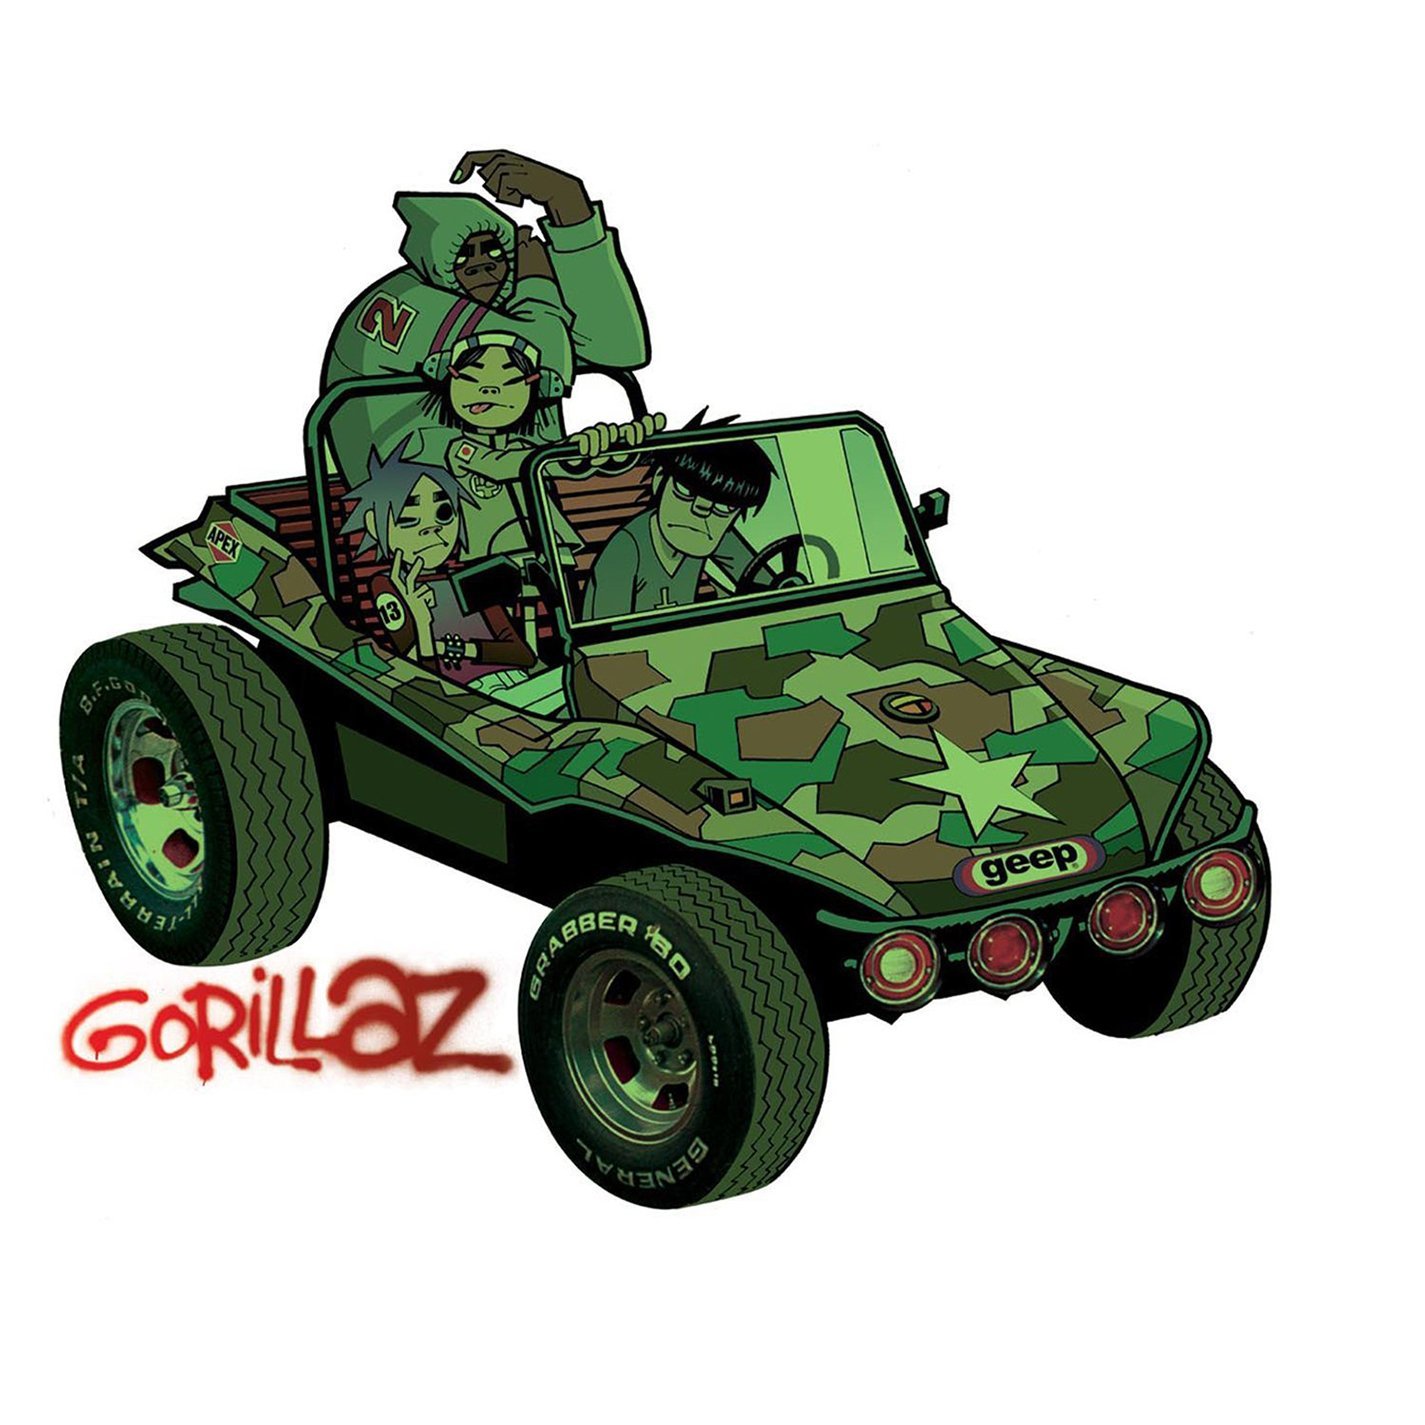 Gorillaz|Gorillaz